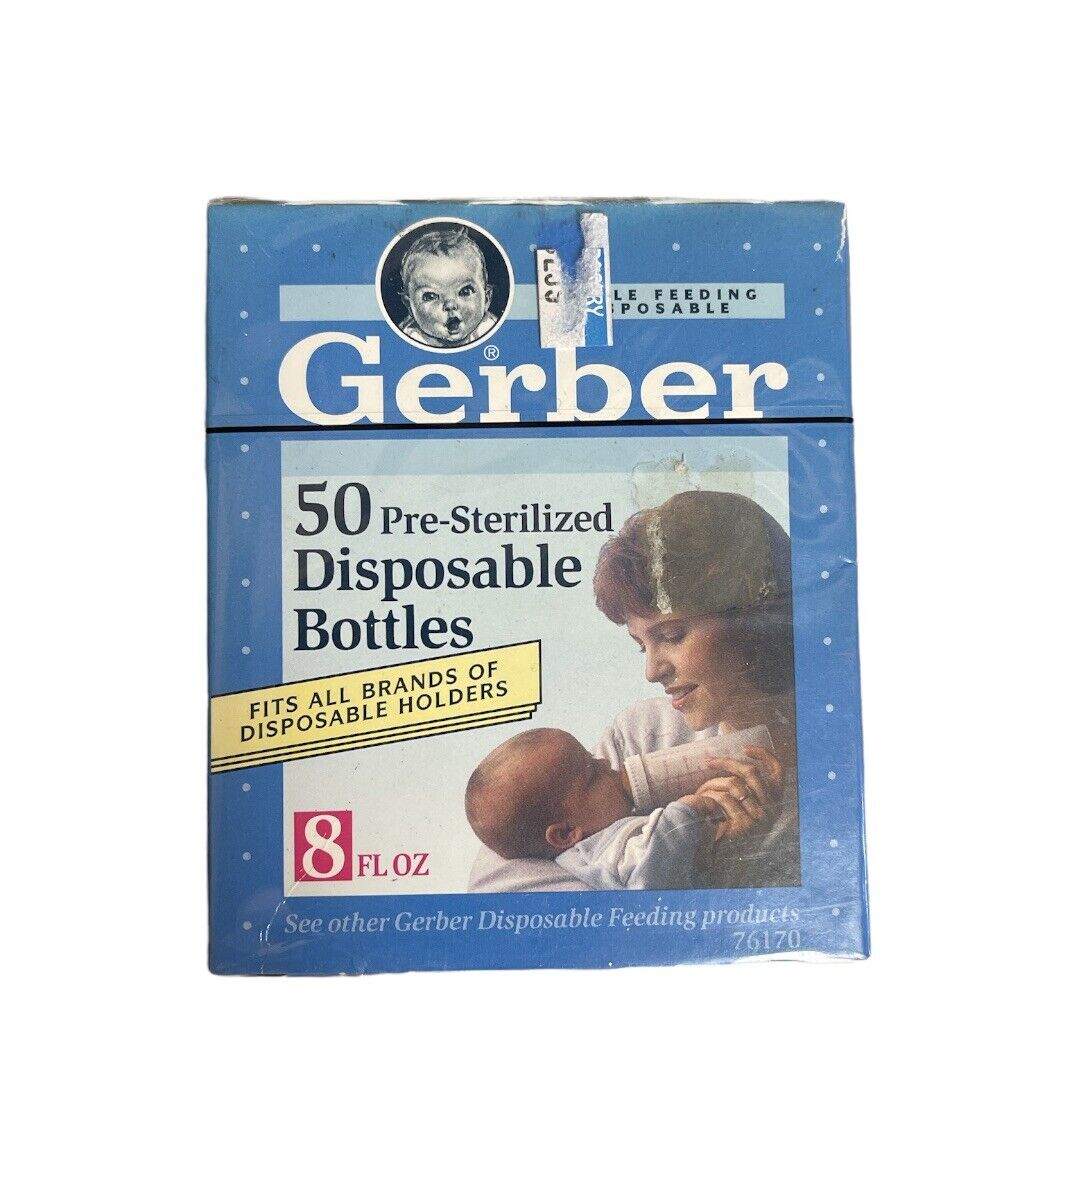 Gerber 50 Pre-sterilized Disposable Bottles Fits All Brands Vintage 1992